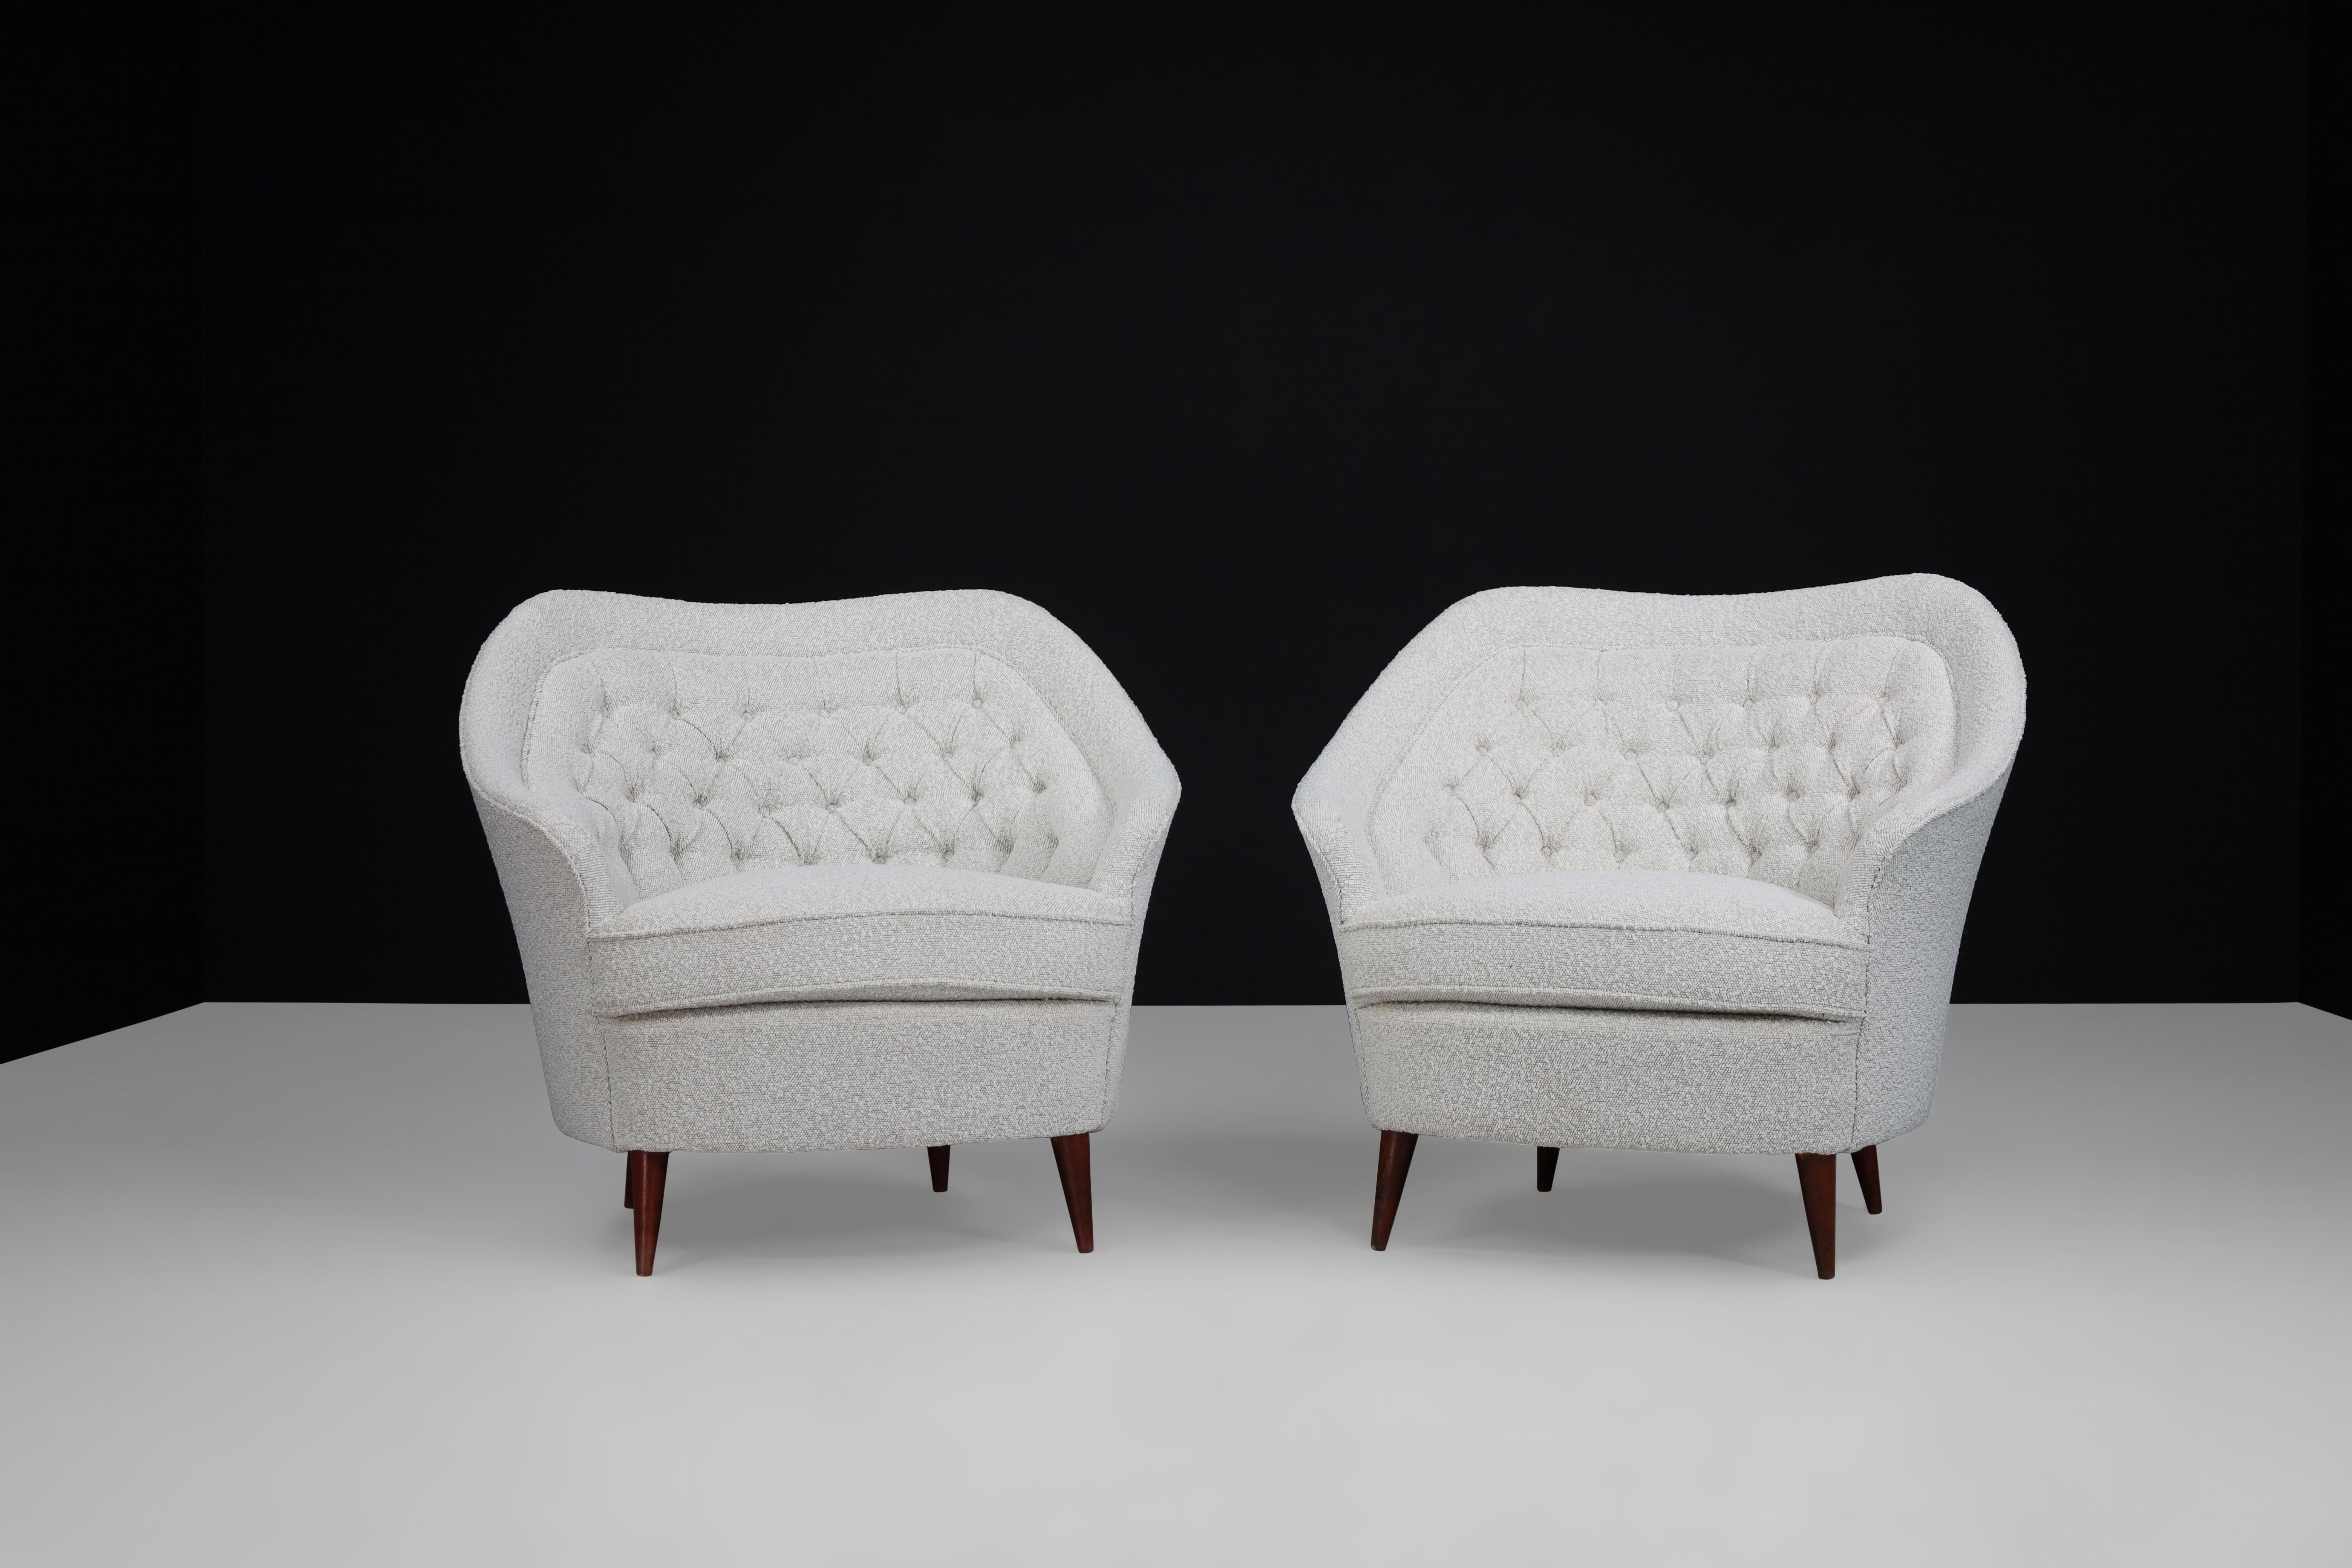 Gio Ponti Für Casa E Giardino Midcentury Sessel mit Bouclé-Polsterung Italien 1940er Jahre 

Diese eleganten italienischen Sessel aus der Mitte des Jahrhunderts sind nicht nur bequem, sondern auch unglaublich elegant. Ihr einzigartiges Design